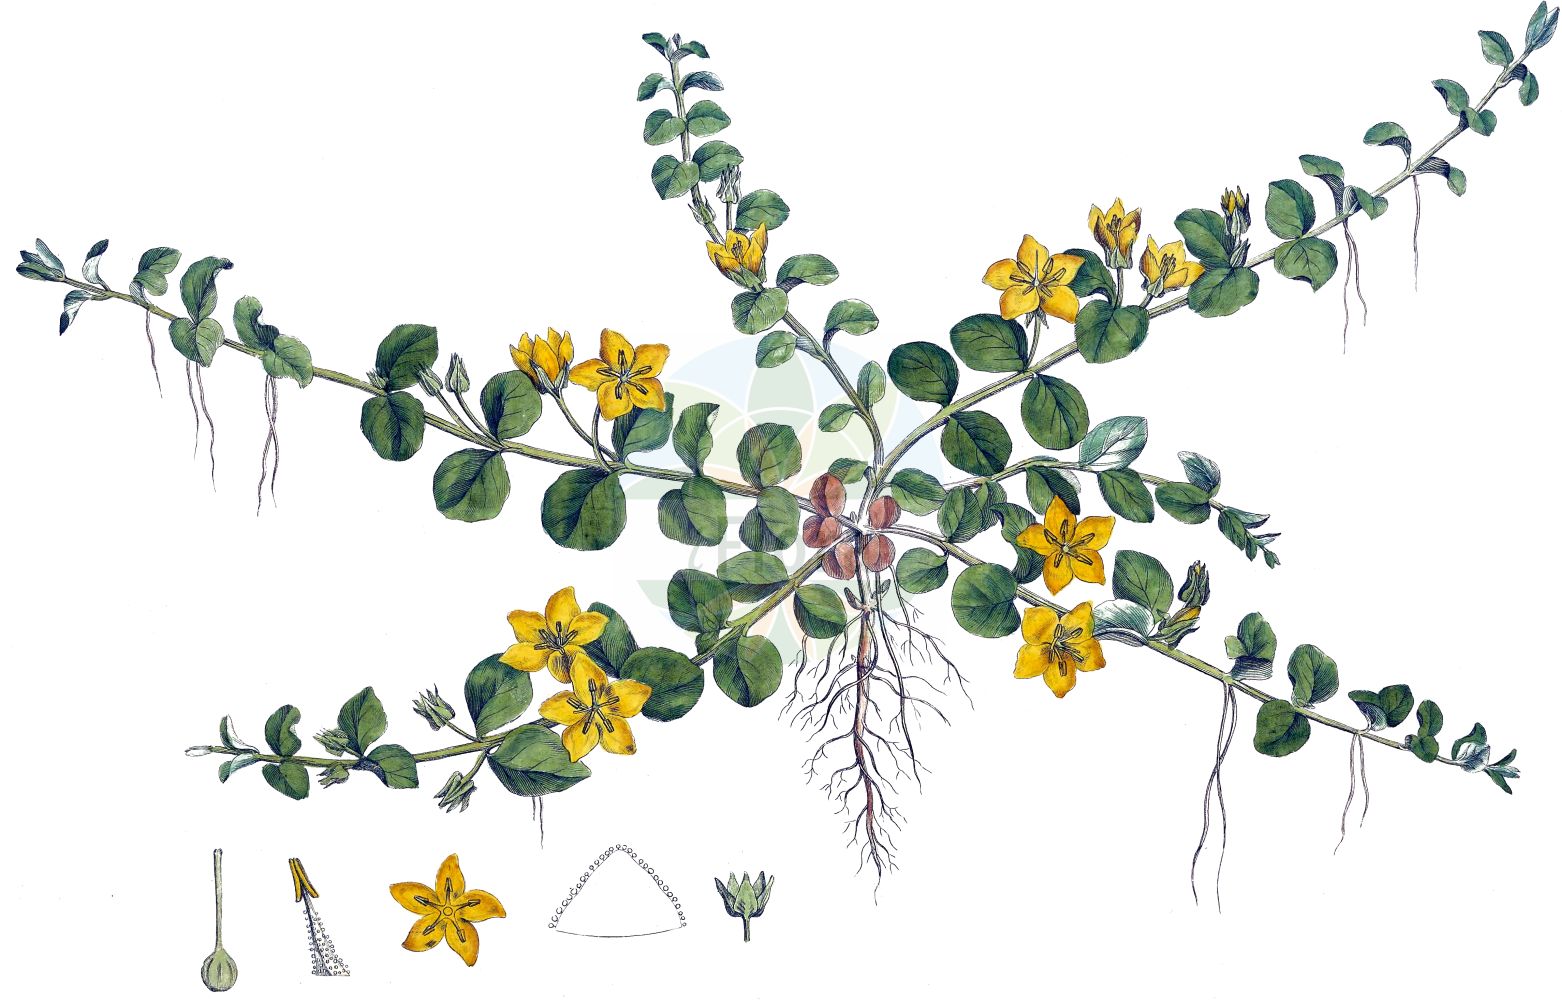 Historische Abbildung von Lysimachia nummularia (Pfennigkraut - Creeping-Jenny). Das Bild zeigt Blatt, Bluete, Frucht und Same. ---- Historical Drawing of Lysimachia nummularia (Pfennigkraut - Creeping-Jenny). The image is showing leaf, flower, fruit and seed.(Lysimachia nummularia,Pfennigkraut,Creeping-Jenny,Lysimachia nummularia,Pfennigkraut,Creeping-Jenny,Moneywort,Twopenny Grass,Lysimachia,Gilbweiderich,Yellow Loosestrife,Primulaceae,Schlüsselblumengewächse,Primrose family,Blatt,Bluete,Frucht,Same,leaf,flower,fruit,seed,Curtis (1777-1798))